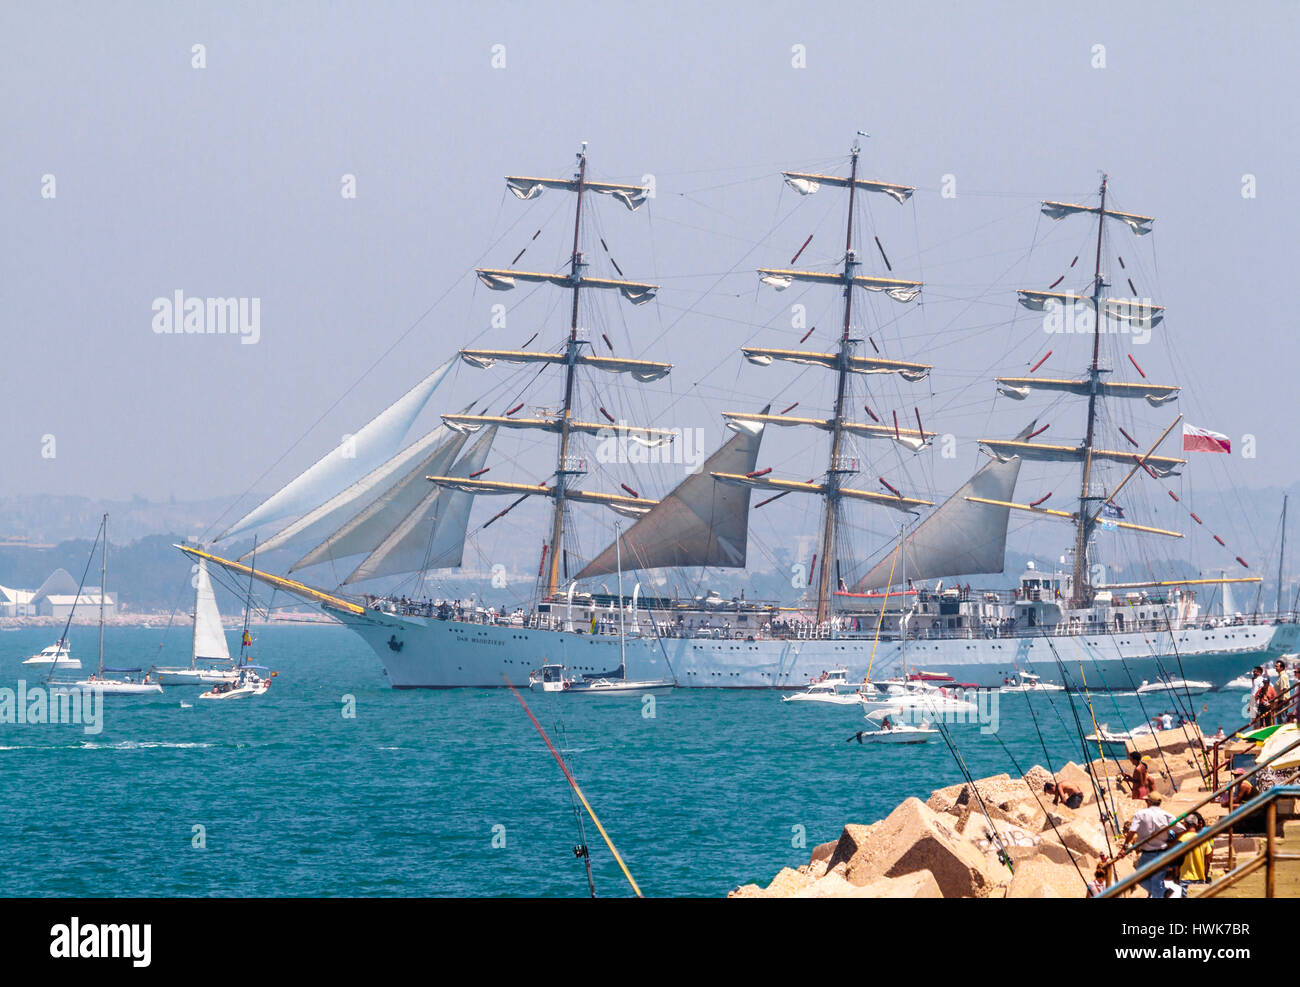 CADIZ, Spanien - 29 JUL: Polnische Marine Schiff, Rennen Dar Mlodziezy setzen Segel auf dem Großsegler 2012 am 29. Juli 2012, in Cadiz, Spanien Stockfoto